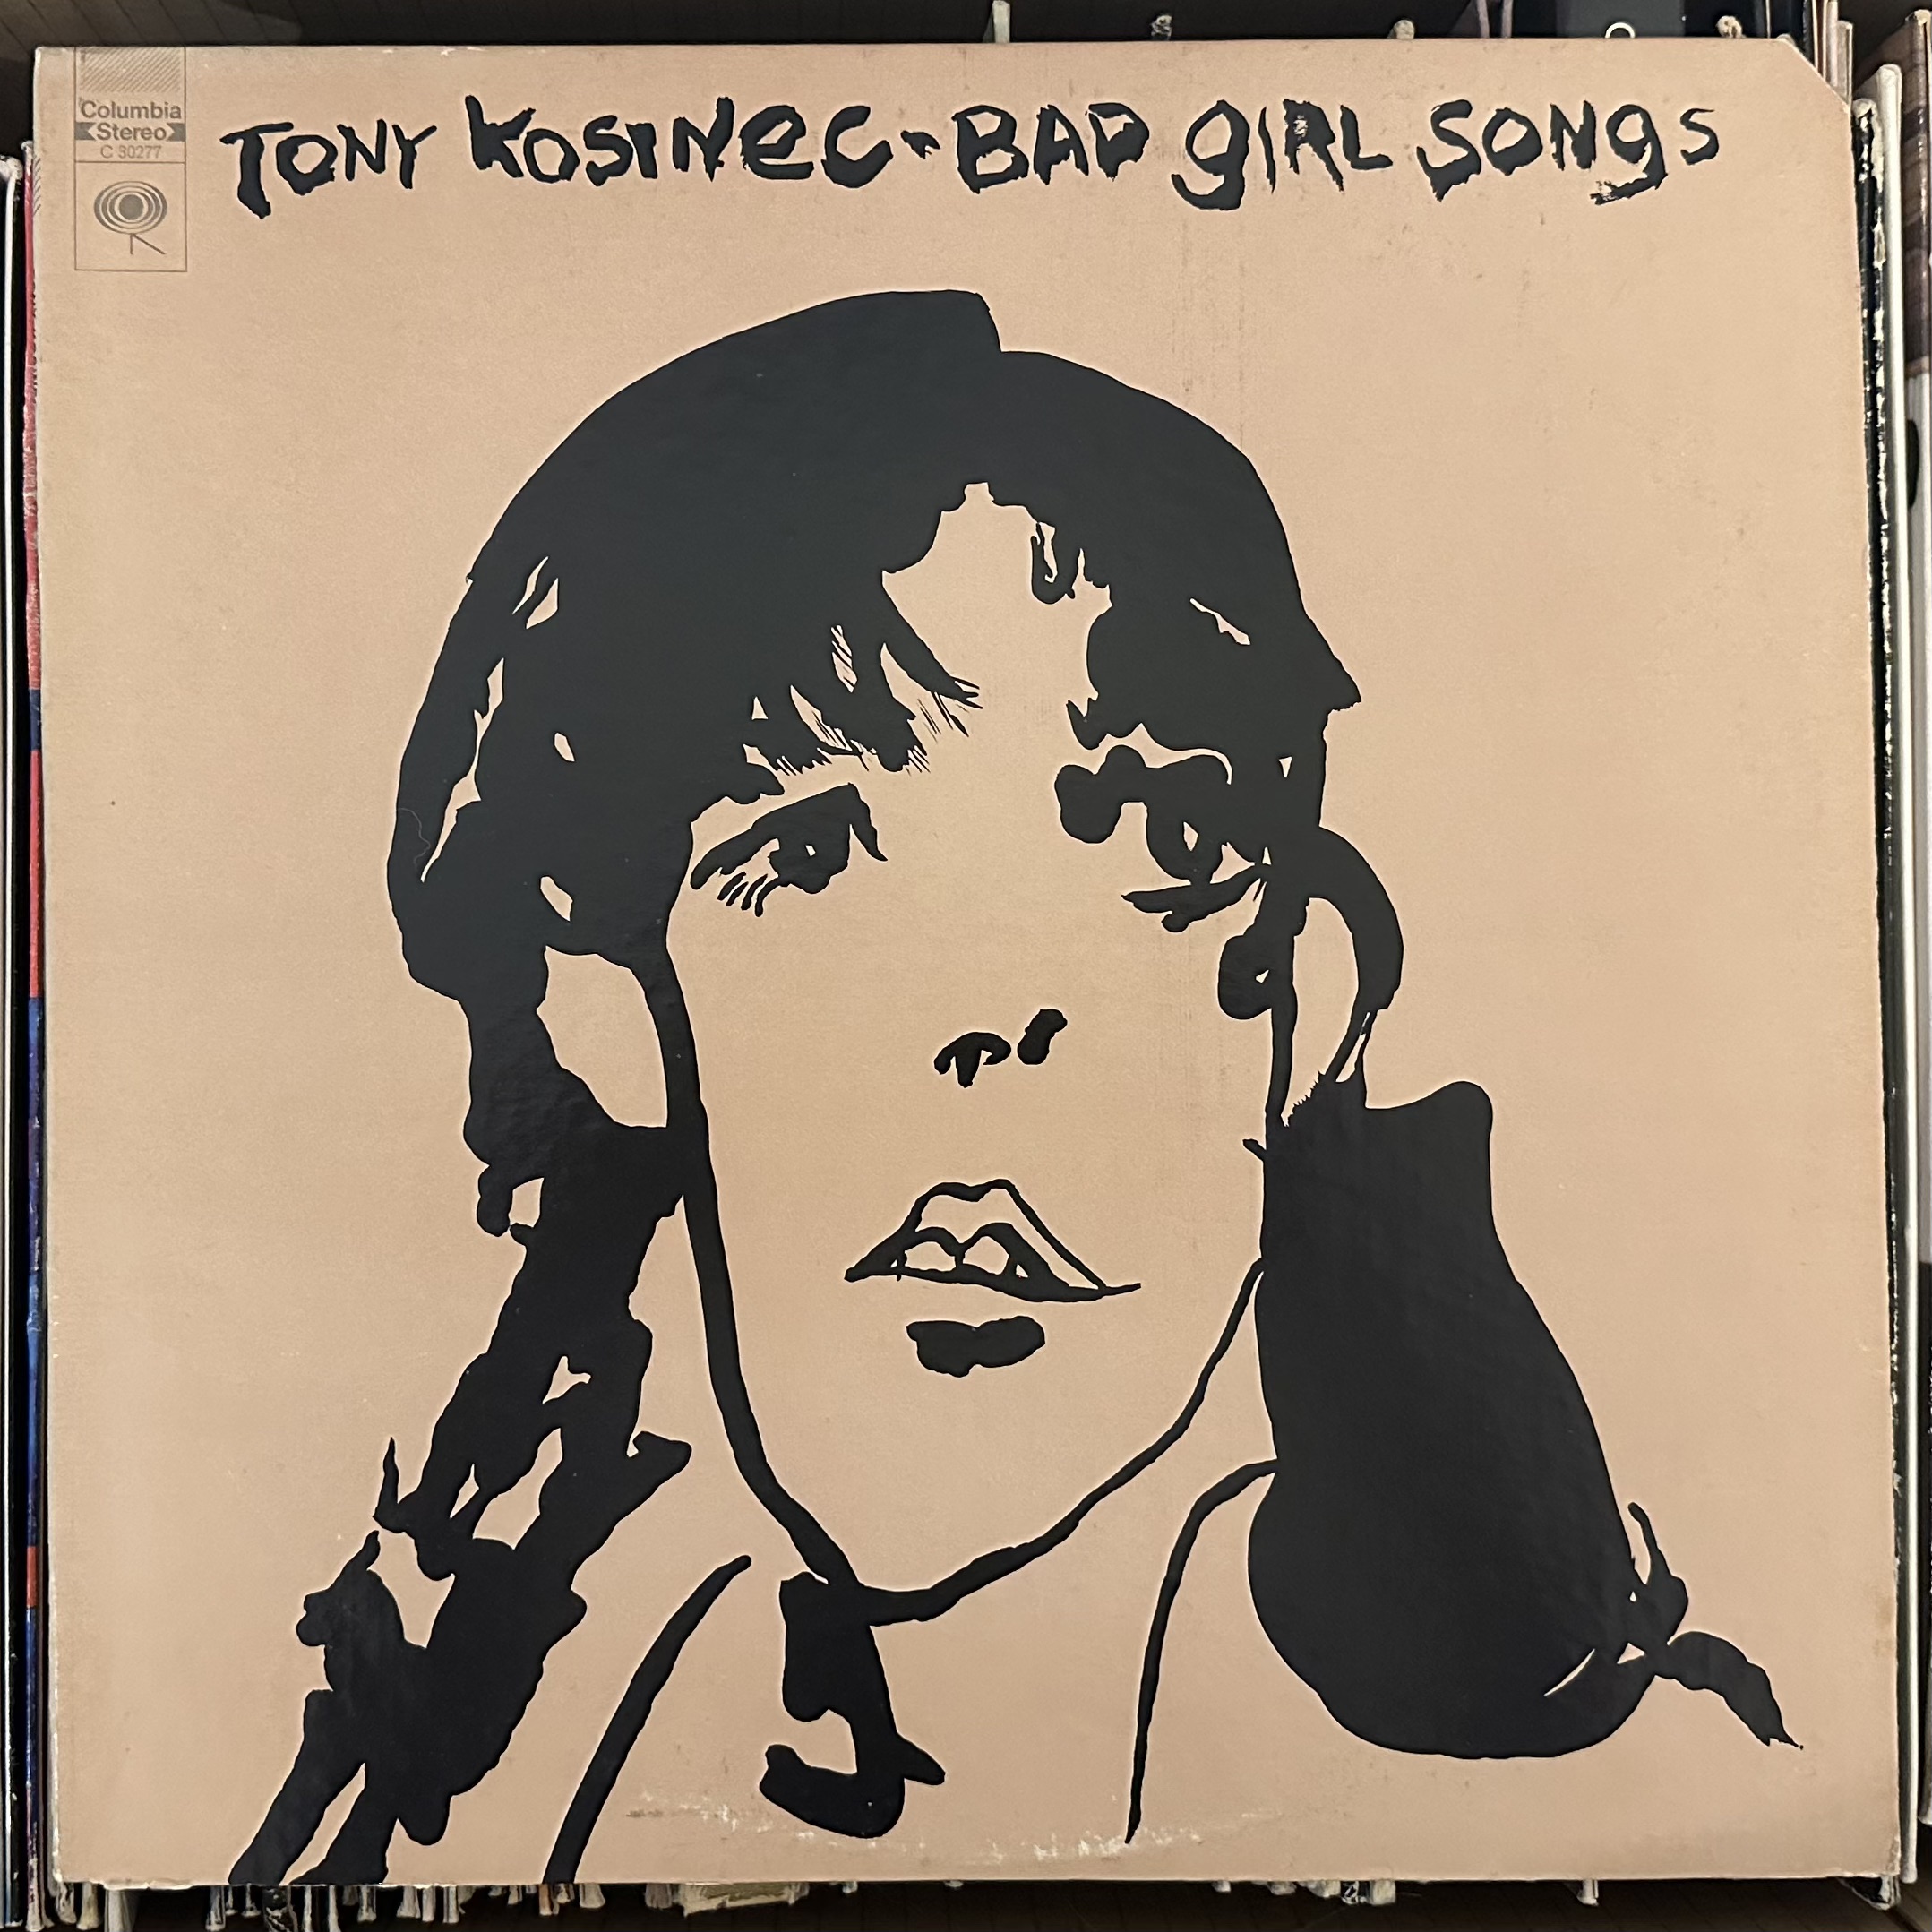 Bad Girl Songs by Tony Kosinec